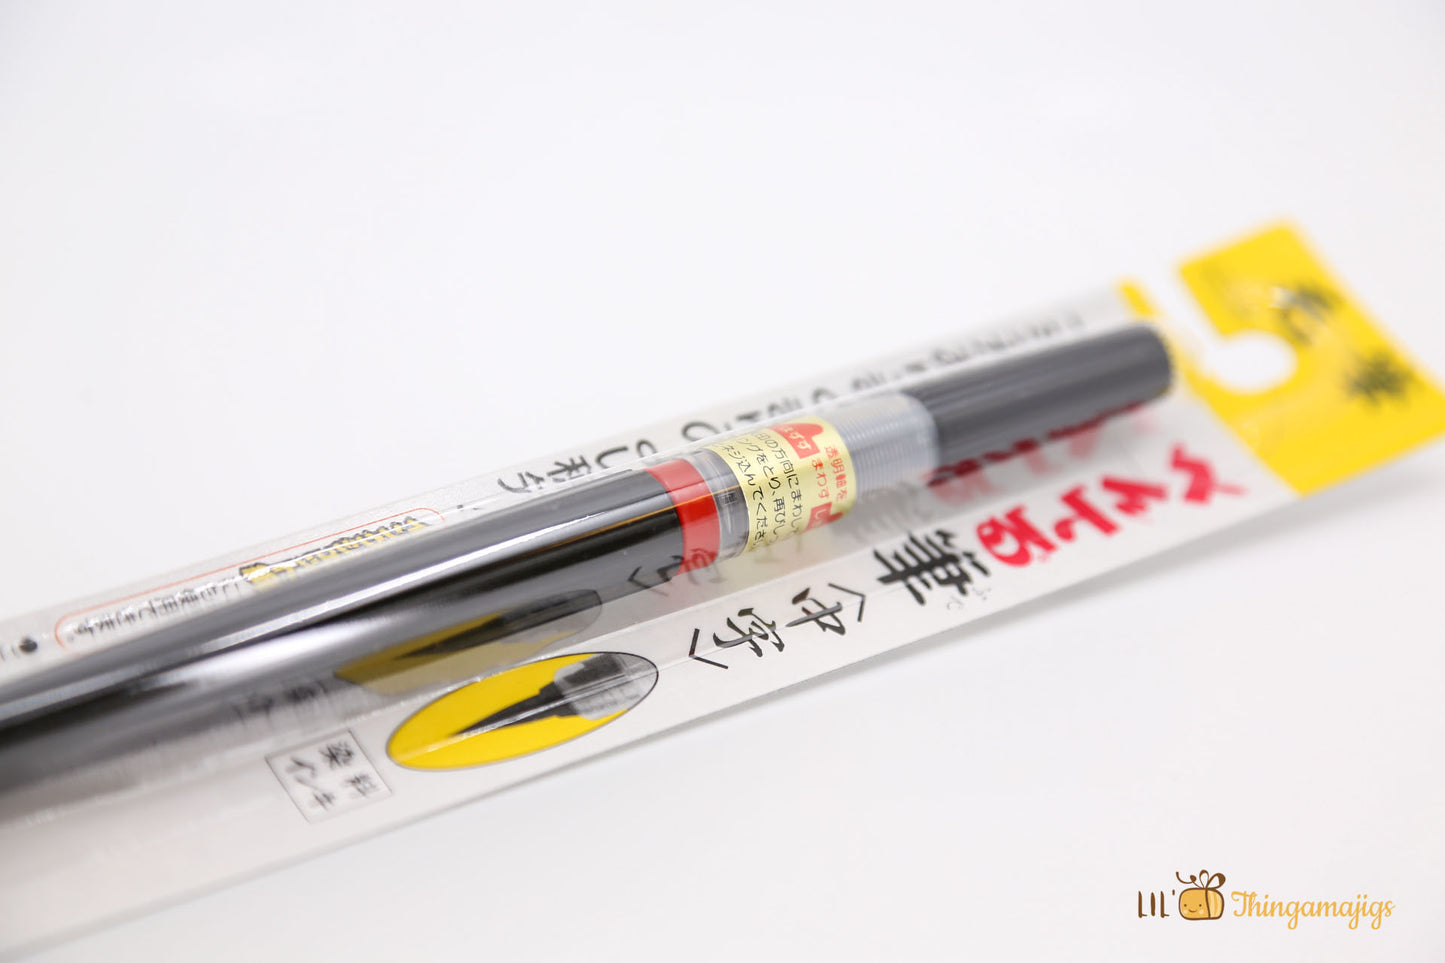 Pentel - Brush Pen XFL2L - Medium